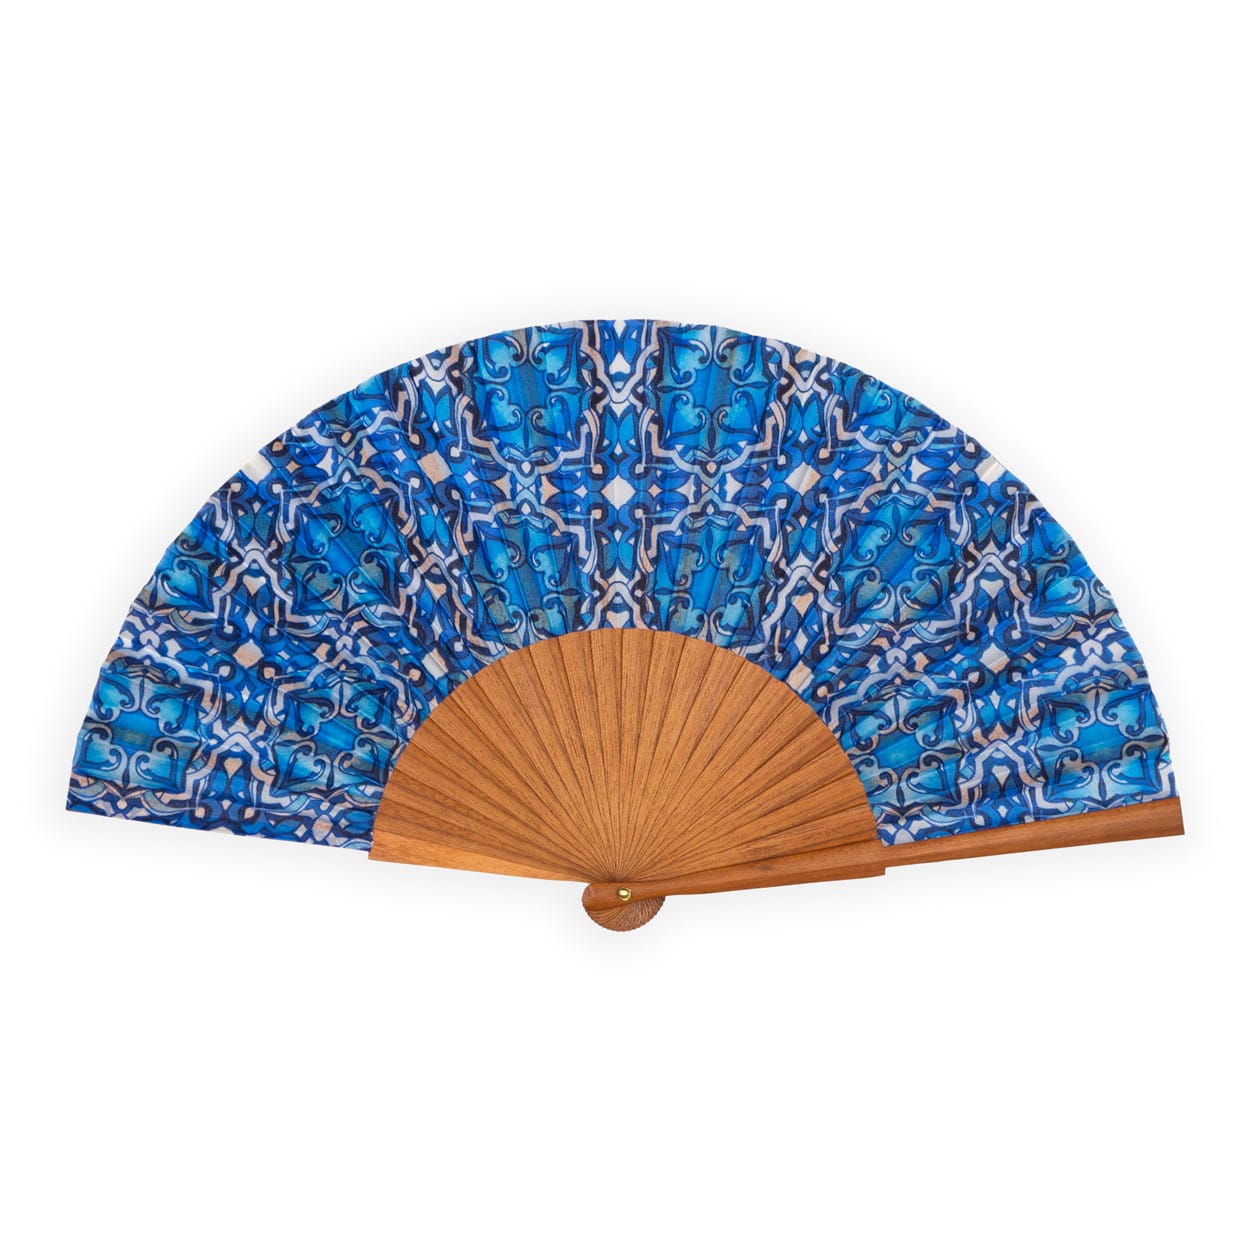 Blue hand fan inspired by Islamic art tiles